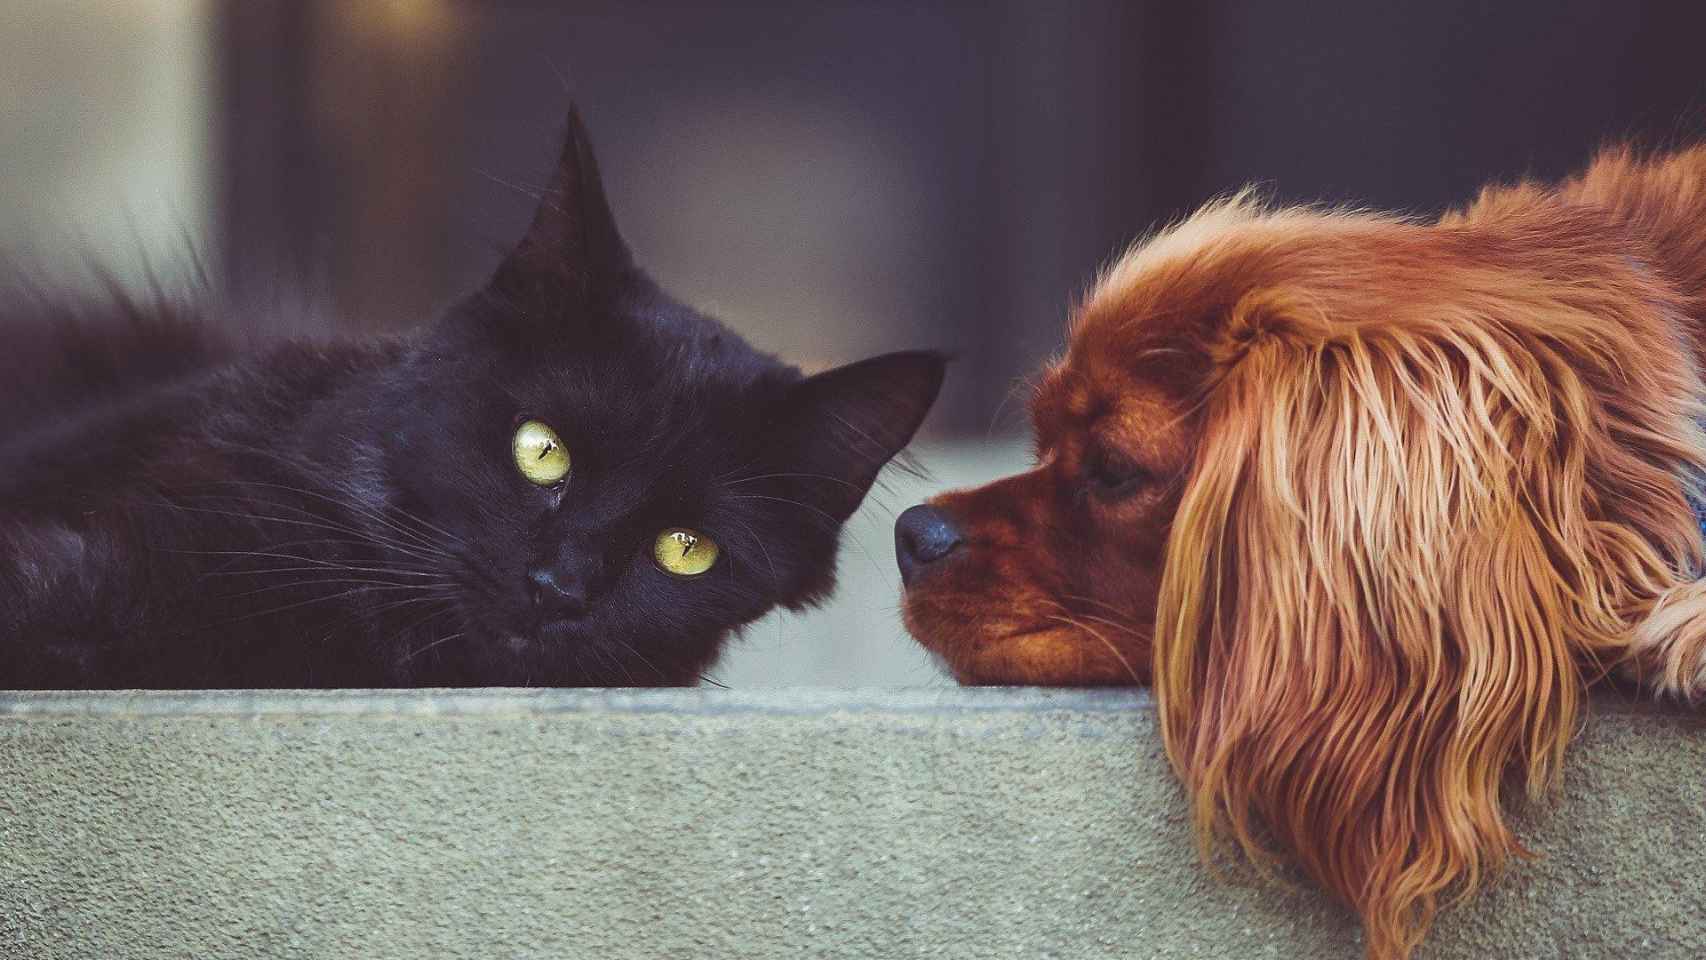 Los veterinarios han lanzado un mensaje tranquilizador sobre las mascotas y el coronavirus / CG